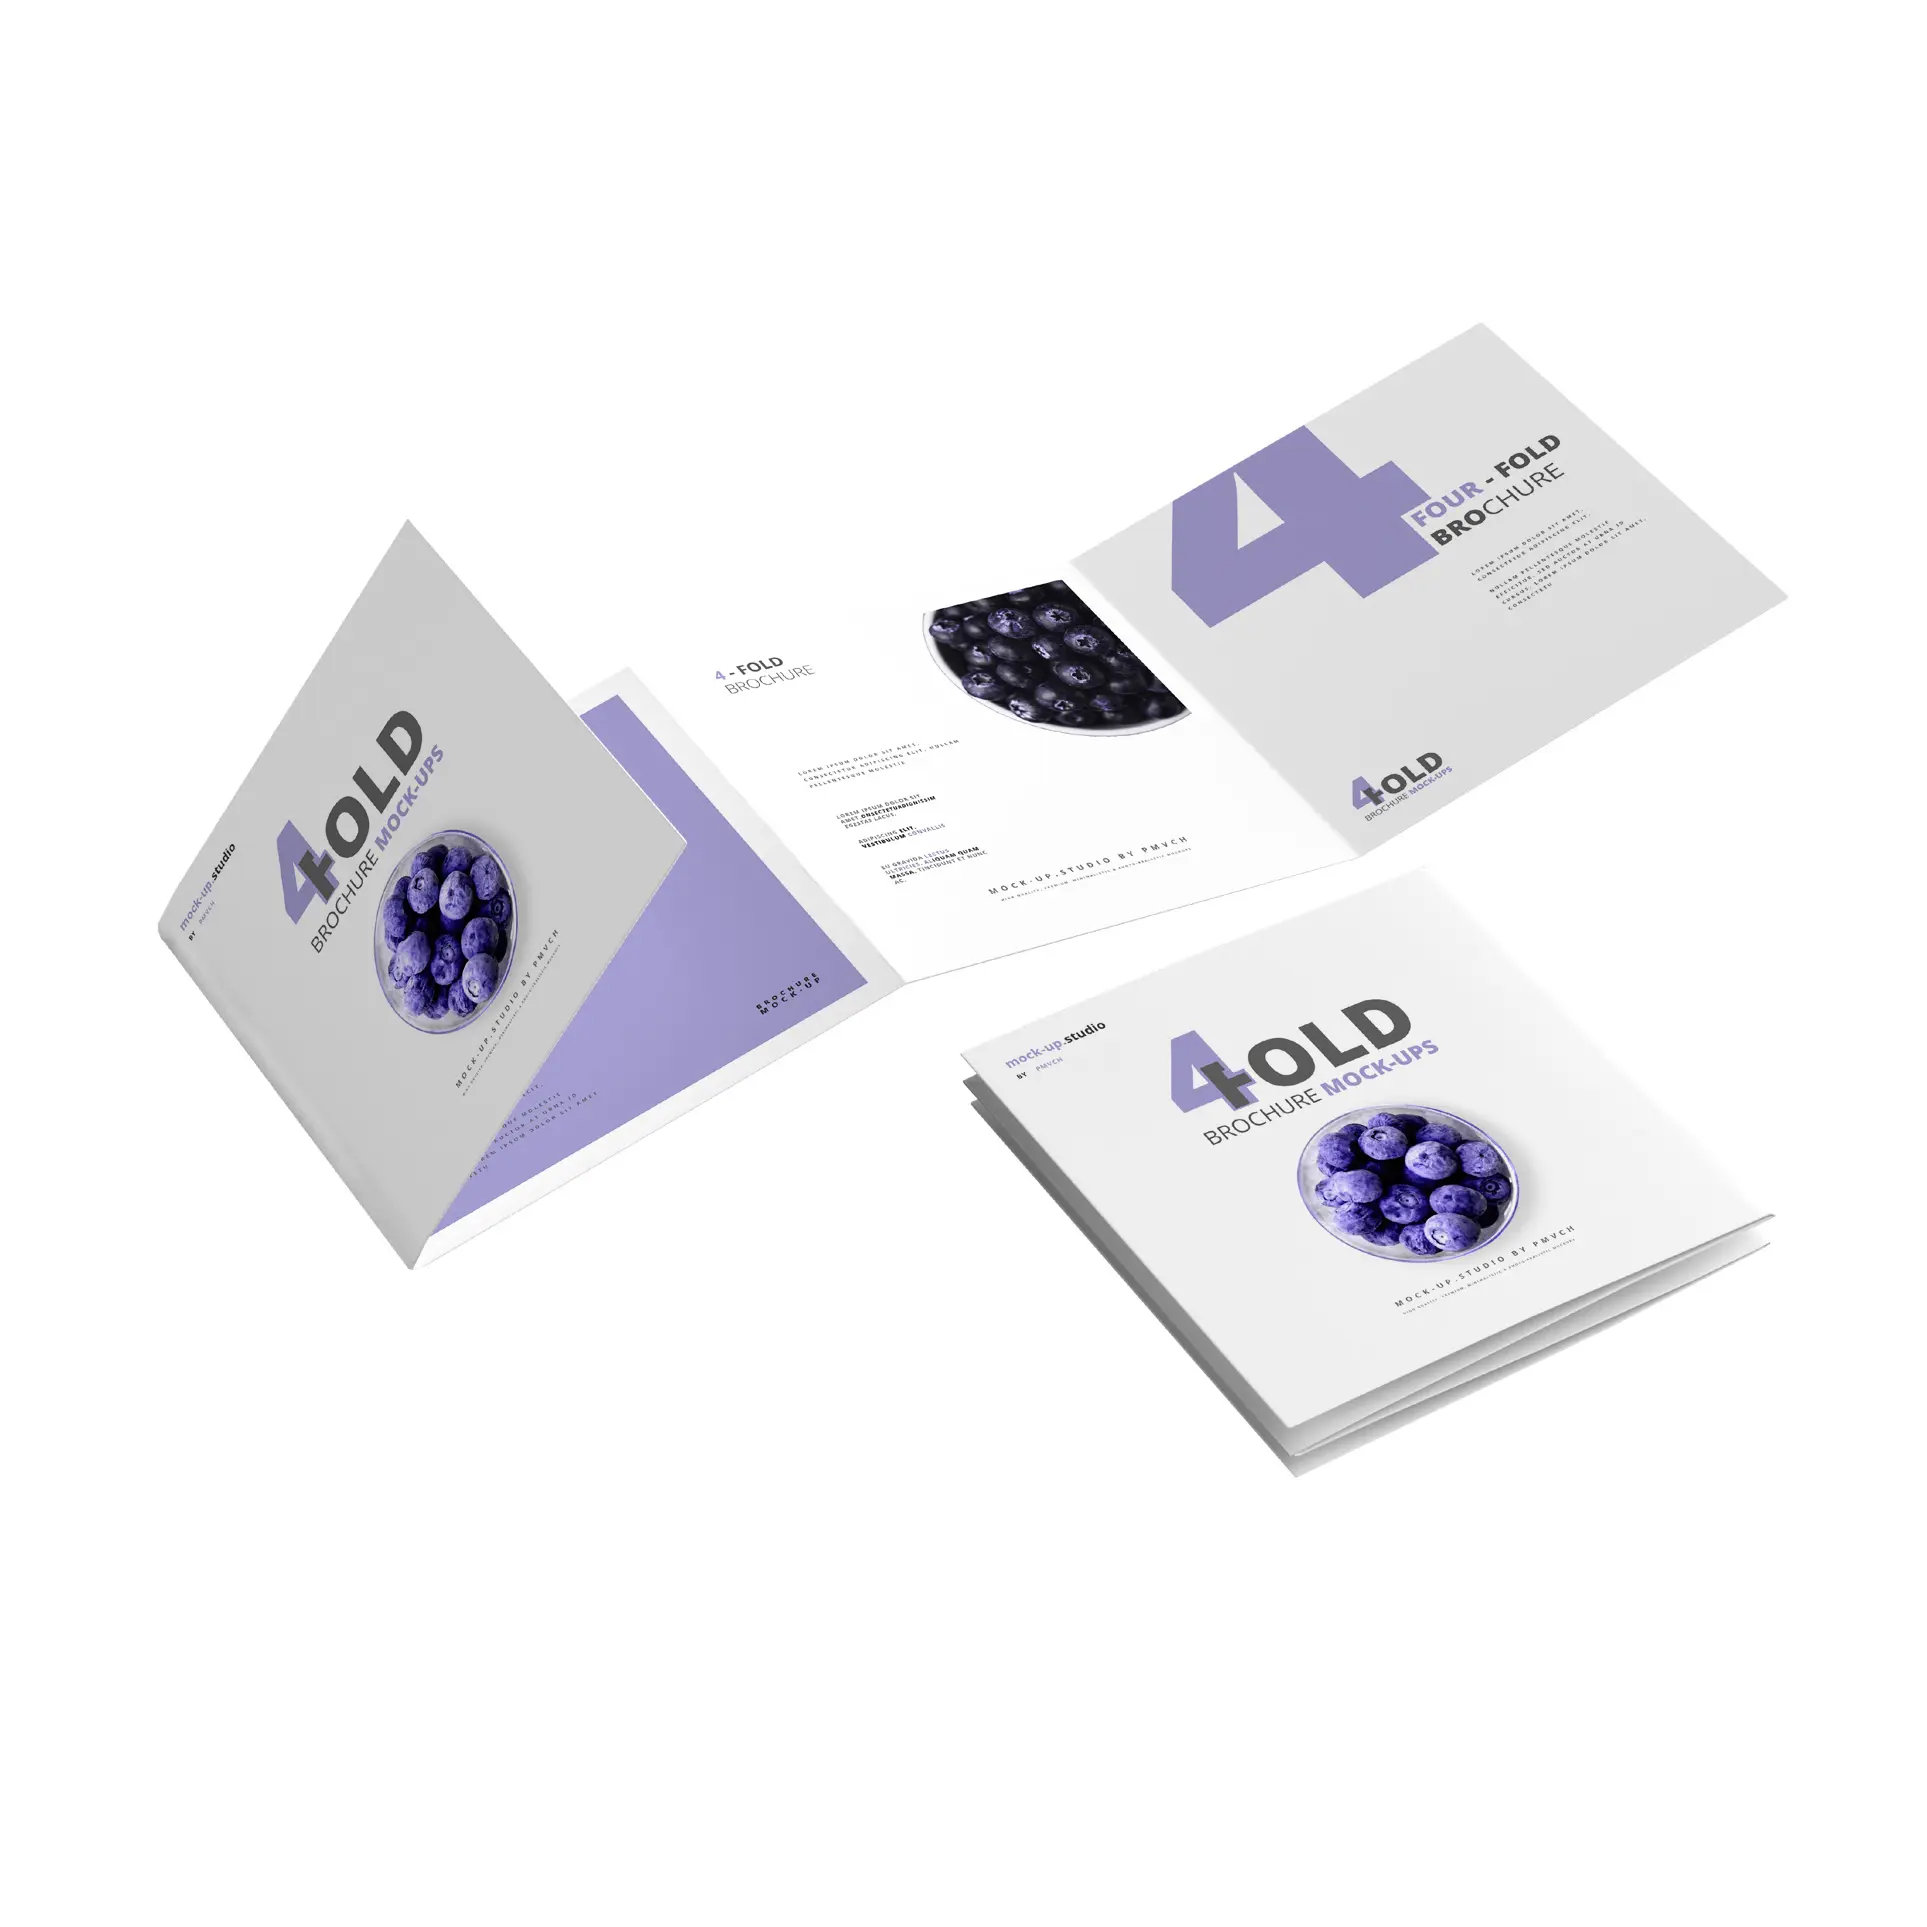 Projeto personalizado da publicação profissional seu próprio booklet revista serviços de impressão de brochura